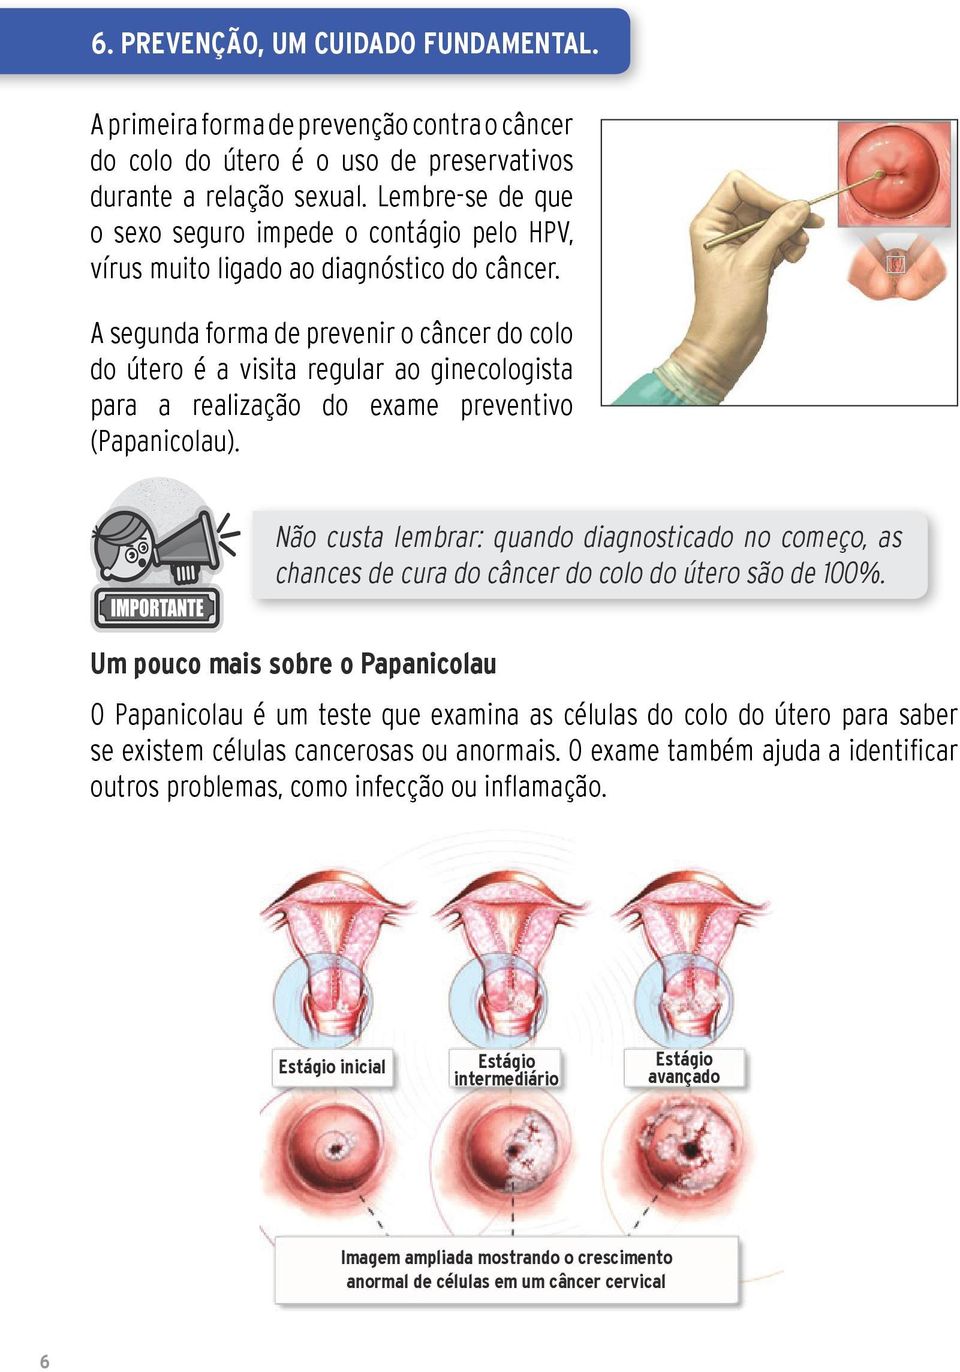 A segunda forma de prevenir o câncer do colo do útero é a visita regular ao ginecologista para a realização do exame preventivo (Papanicolau).